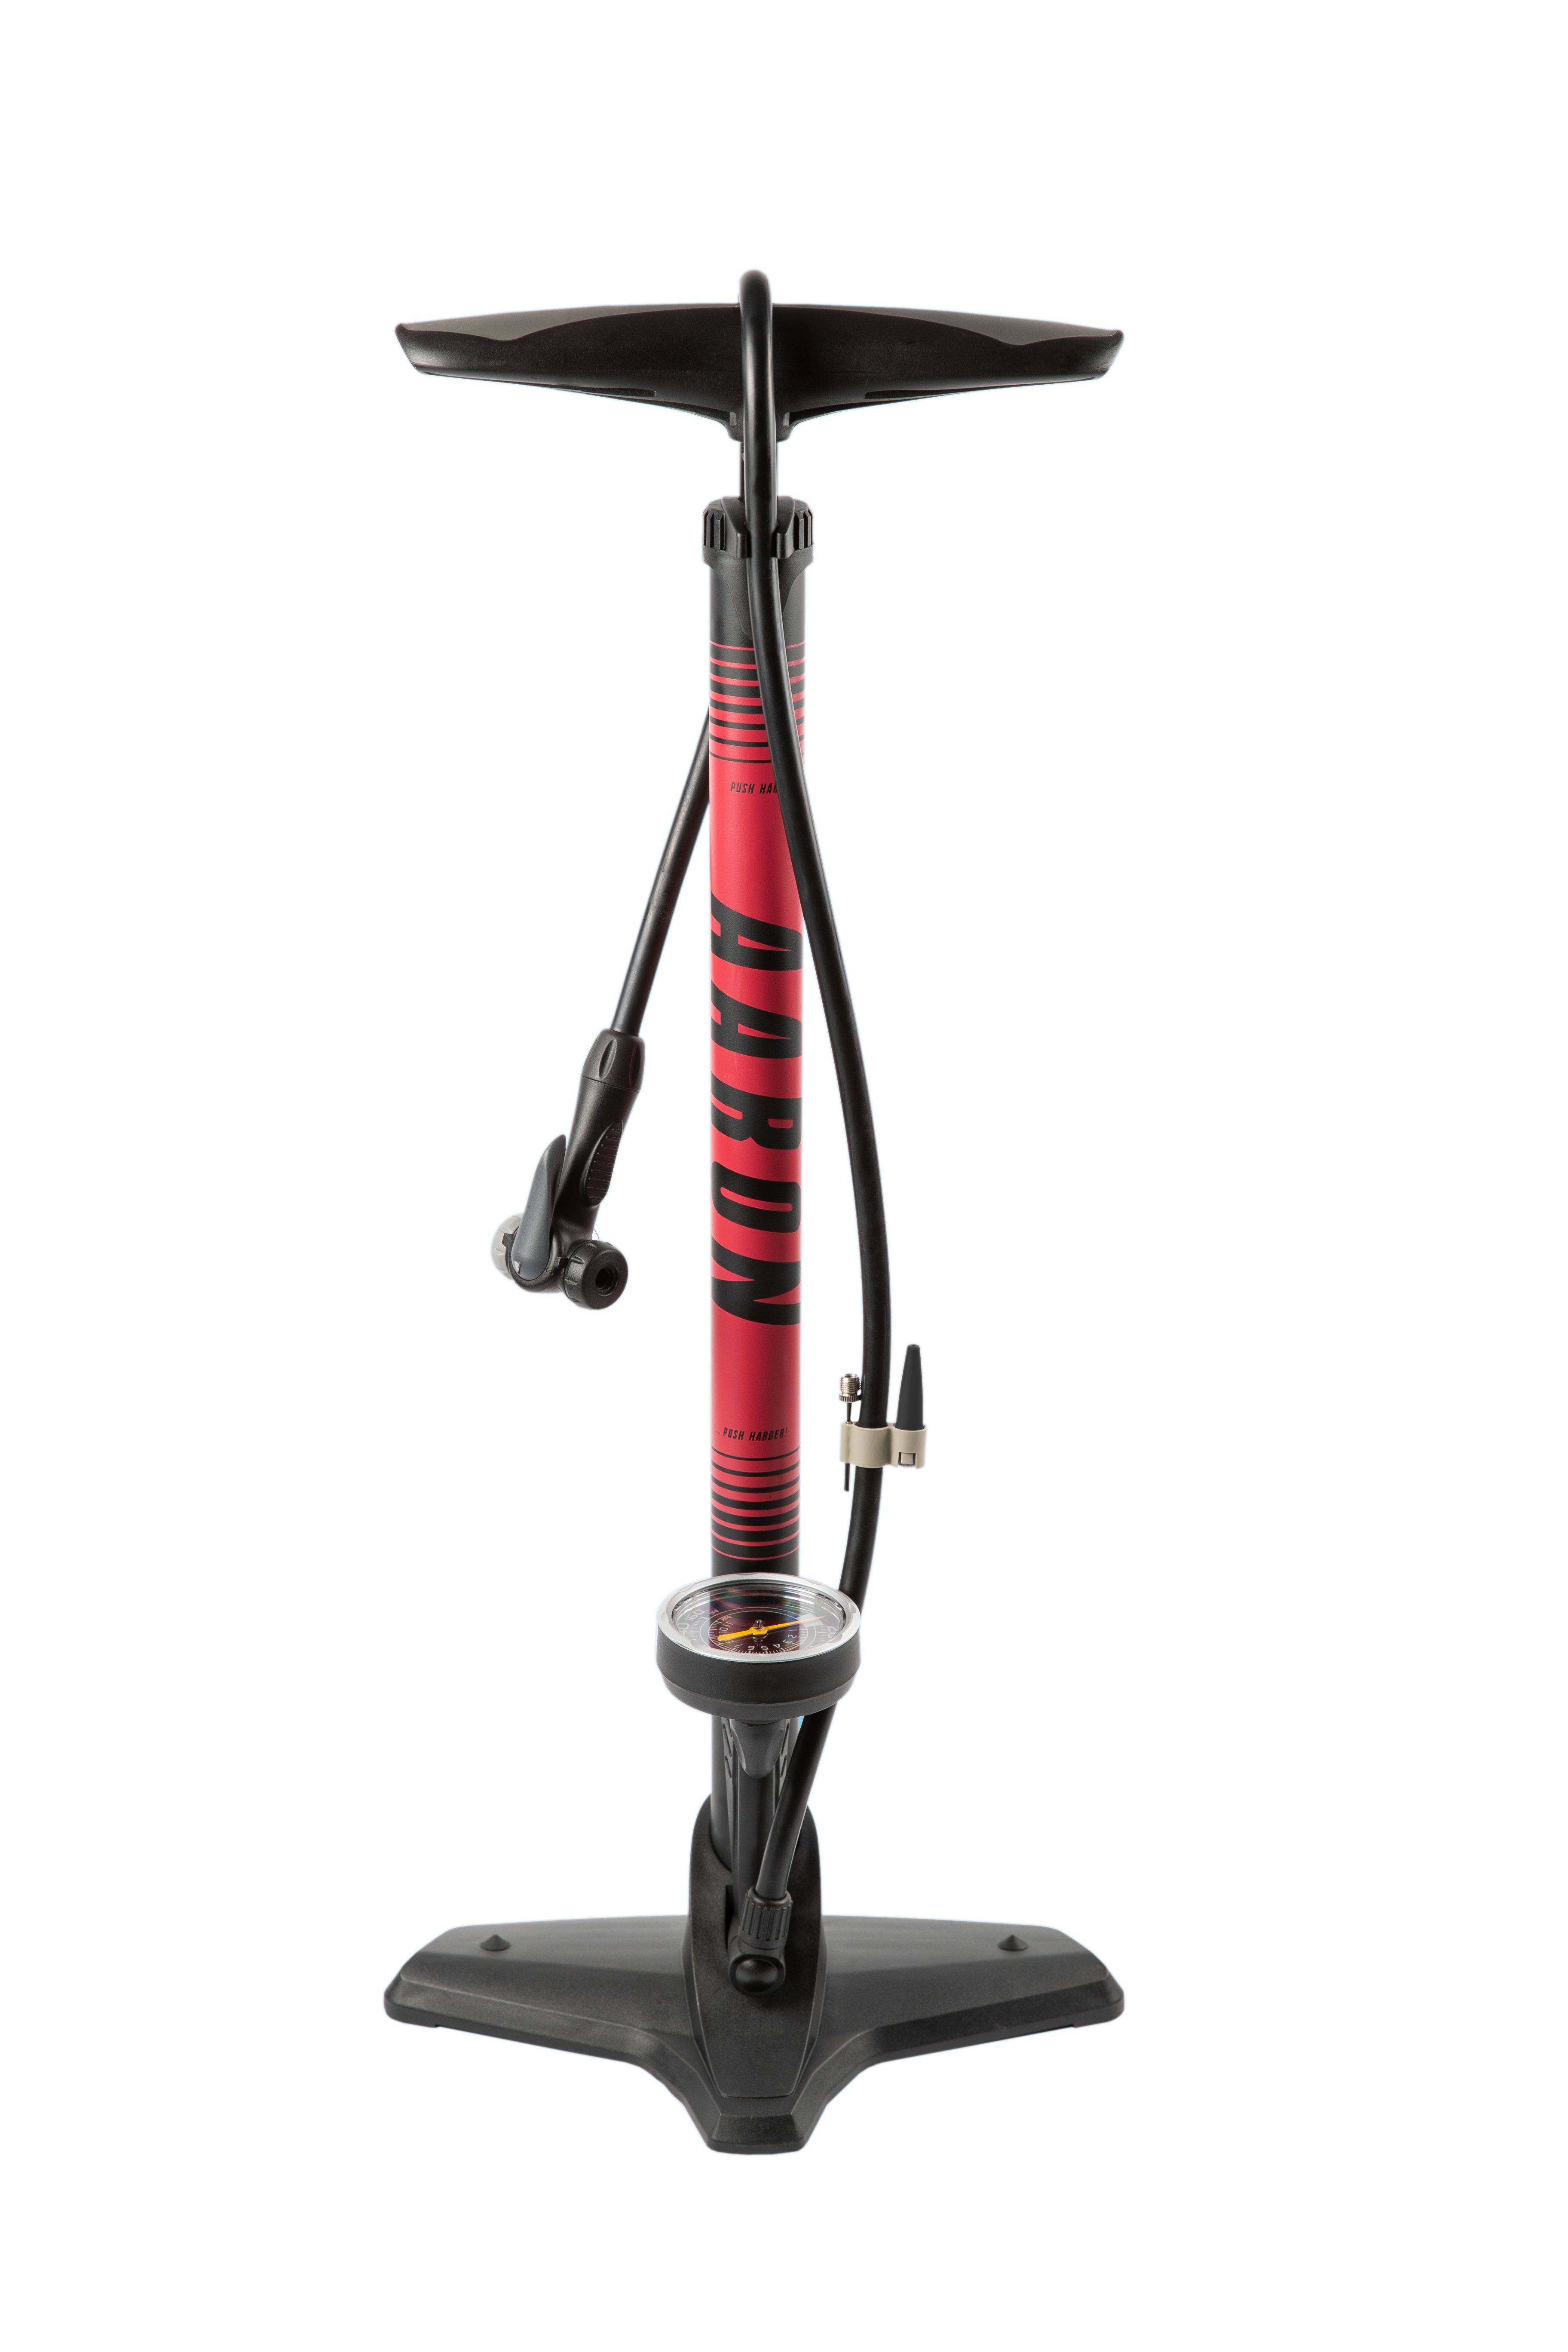 AARON Luftpumpe Sport One in Rot Fahrrad-Stand-Pumpe für alle